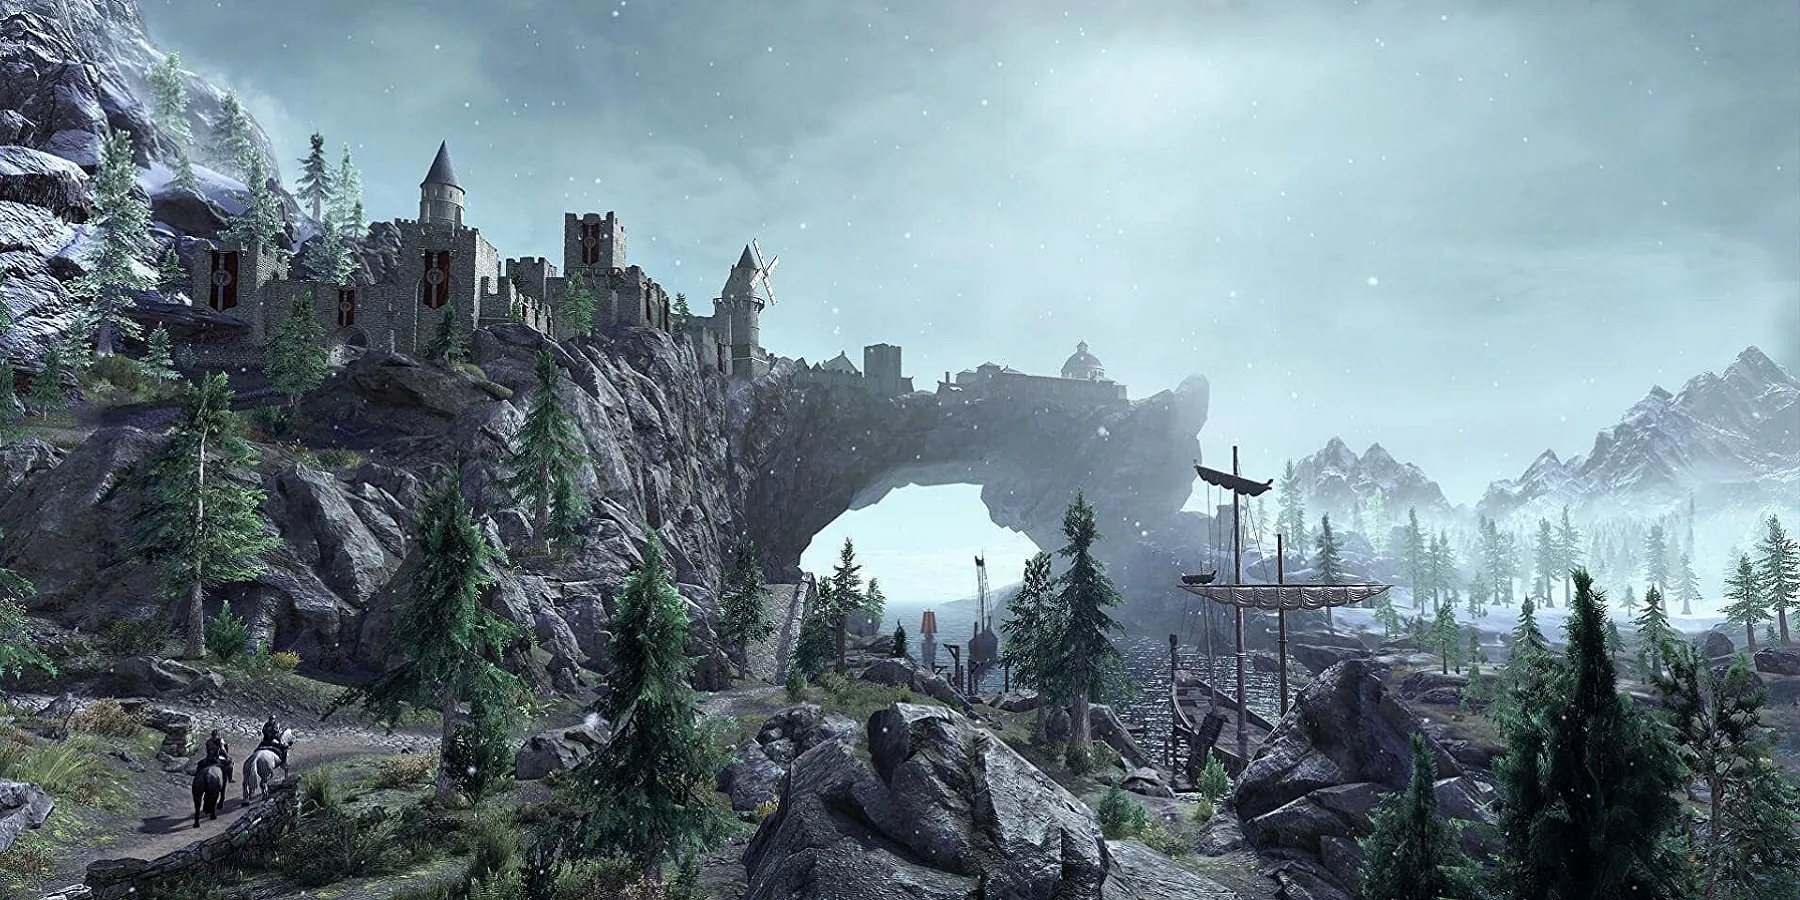 Image de Skyrim montrant la ville de Solitude au loin, avec les quais à proximité.